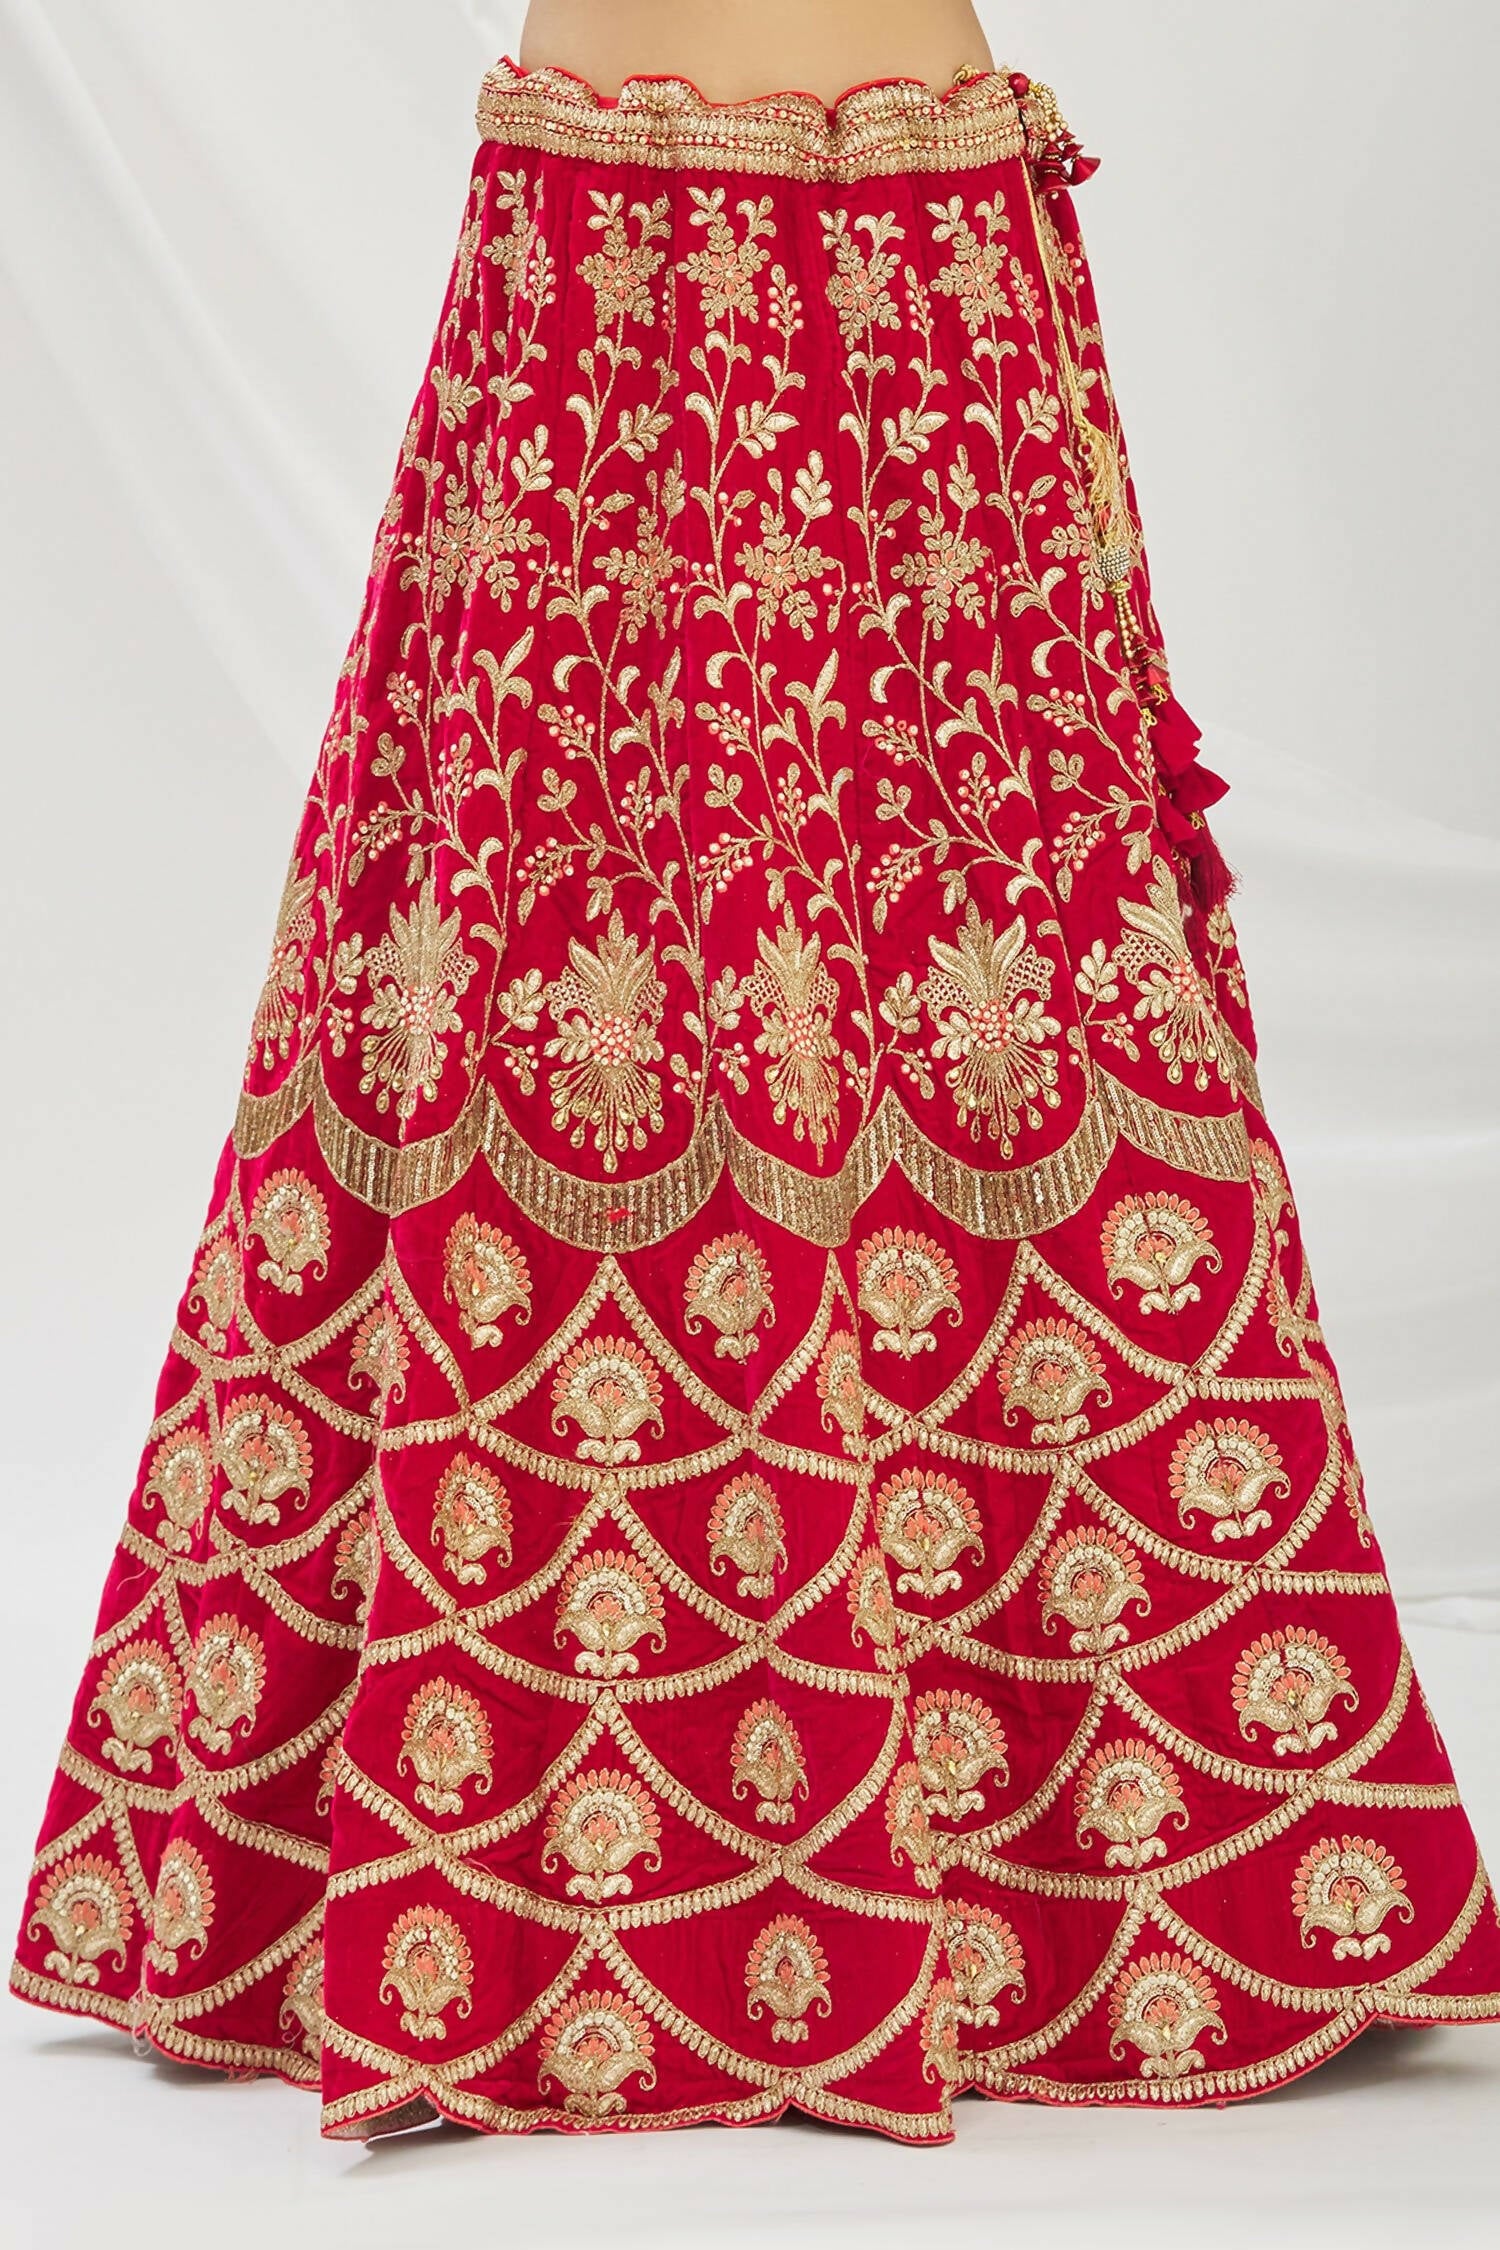 Lehenga #Choli | Embellished bridesmaid dress, Winter dress outfits, Bridal  lehenga choli